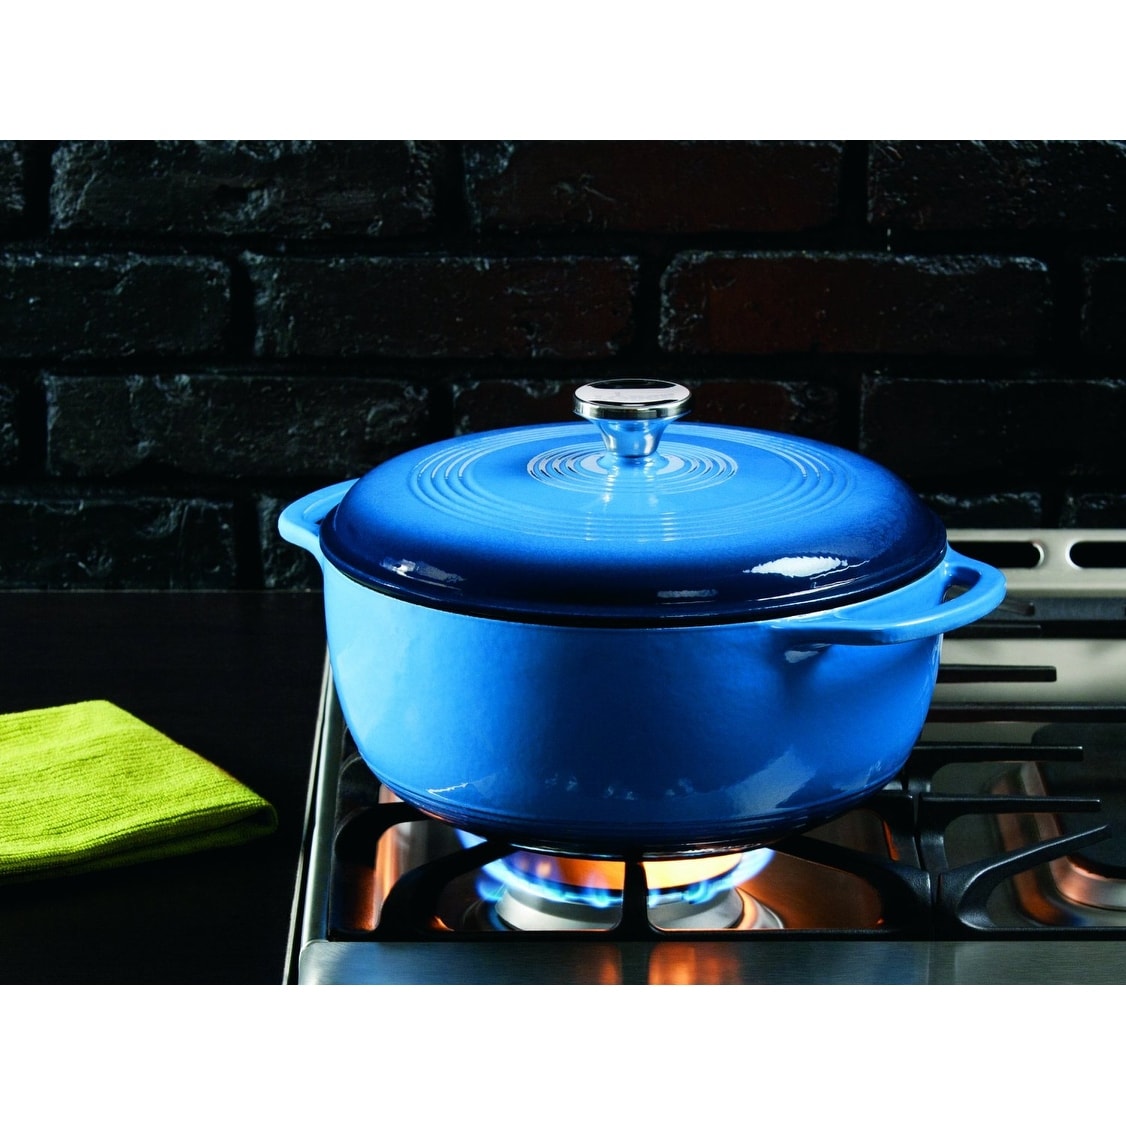 Lodge EC6D33 Color Enamel Dutch Oven, Blue, 6 Quart - Bed Bath & Beyond -  14568405